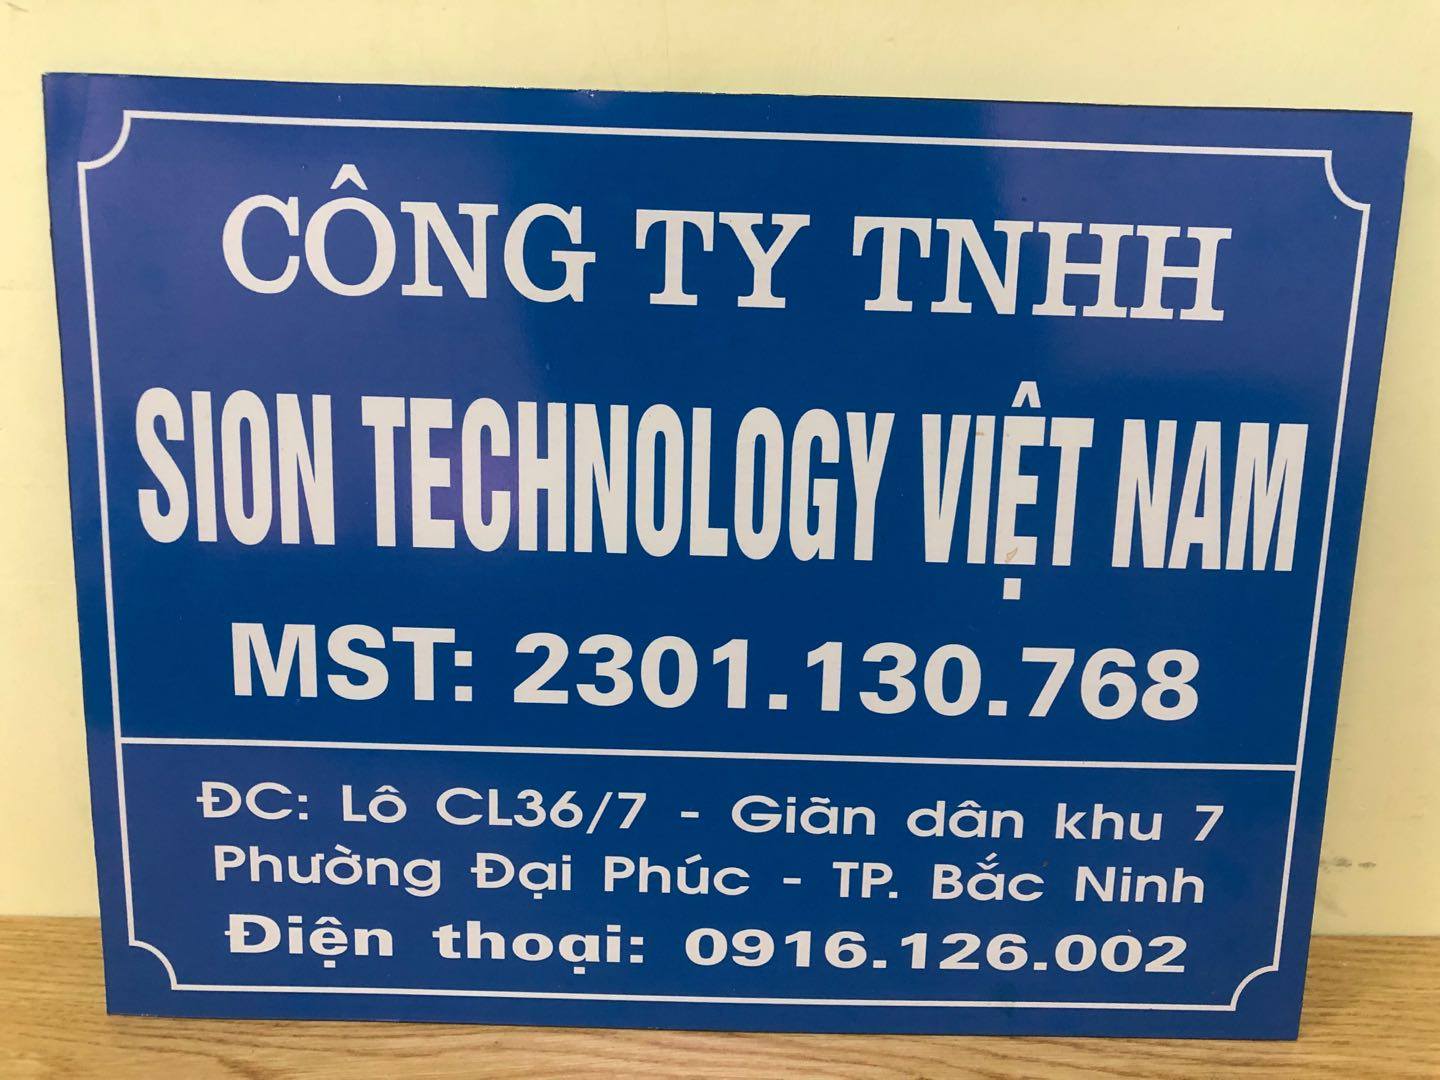 Công ty TNHH SION Technology Việt Nam